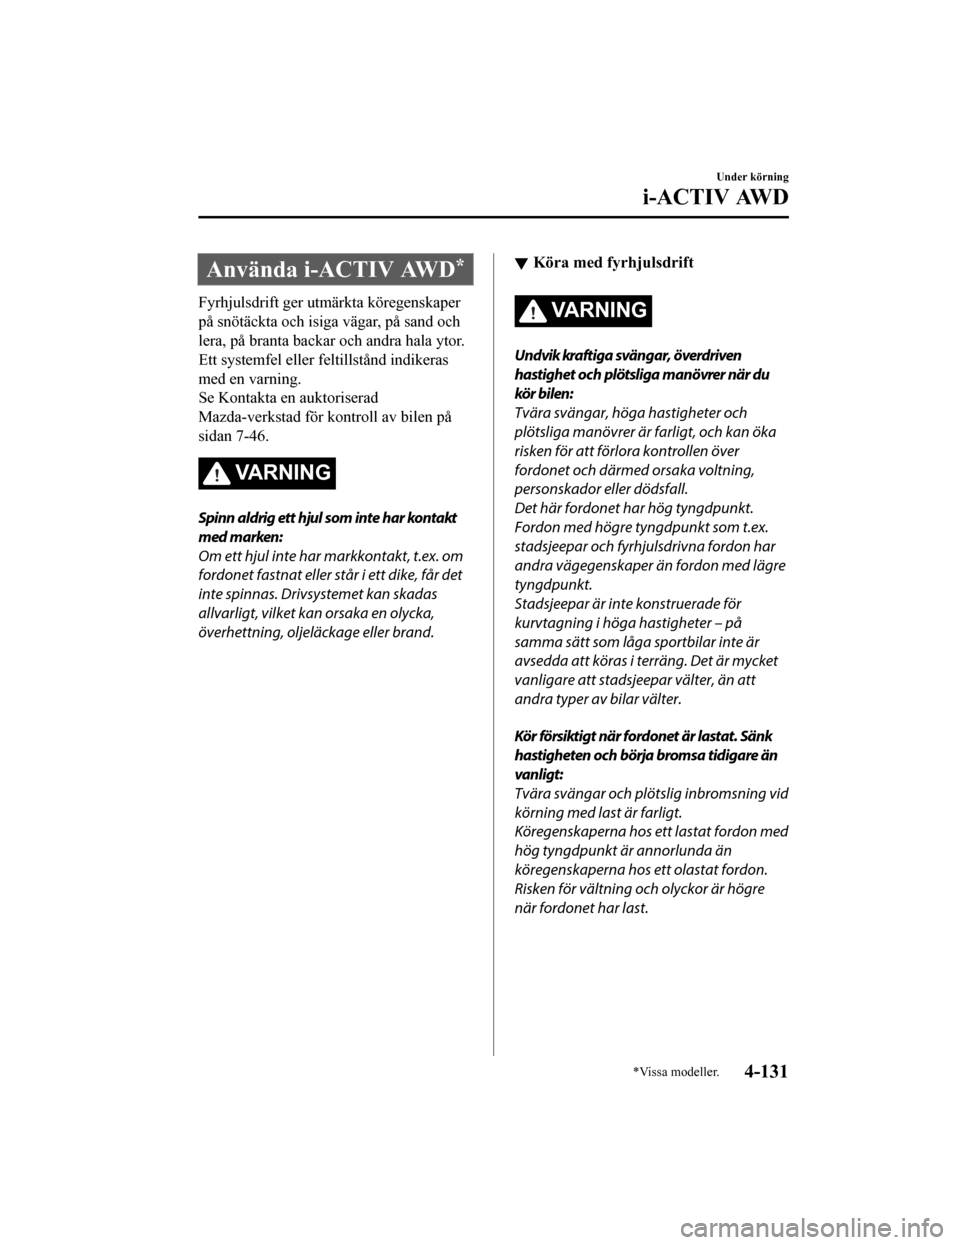 MAZDA MODEL CX-5 2019  Ägarmanual (in Swedish) Använda i-ACTIV AWD*
Fyrhjulsdrift ger utmärkta köregenskaper
på snötäckta och isiga vägar, på sand och
lera, på branta backar och andra hala ytor.
Ett systemfel eller feltillstånd indikeras